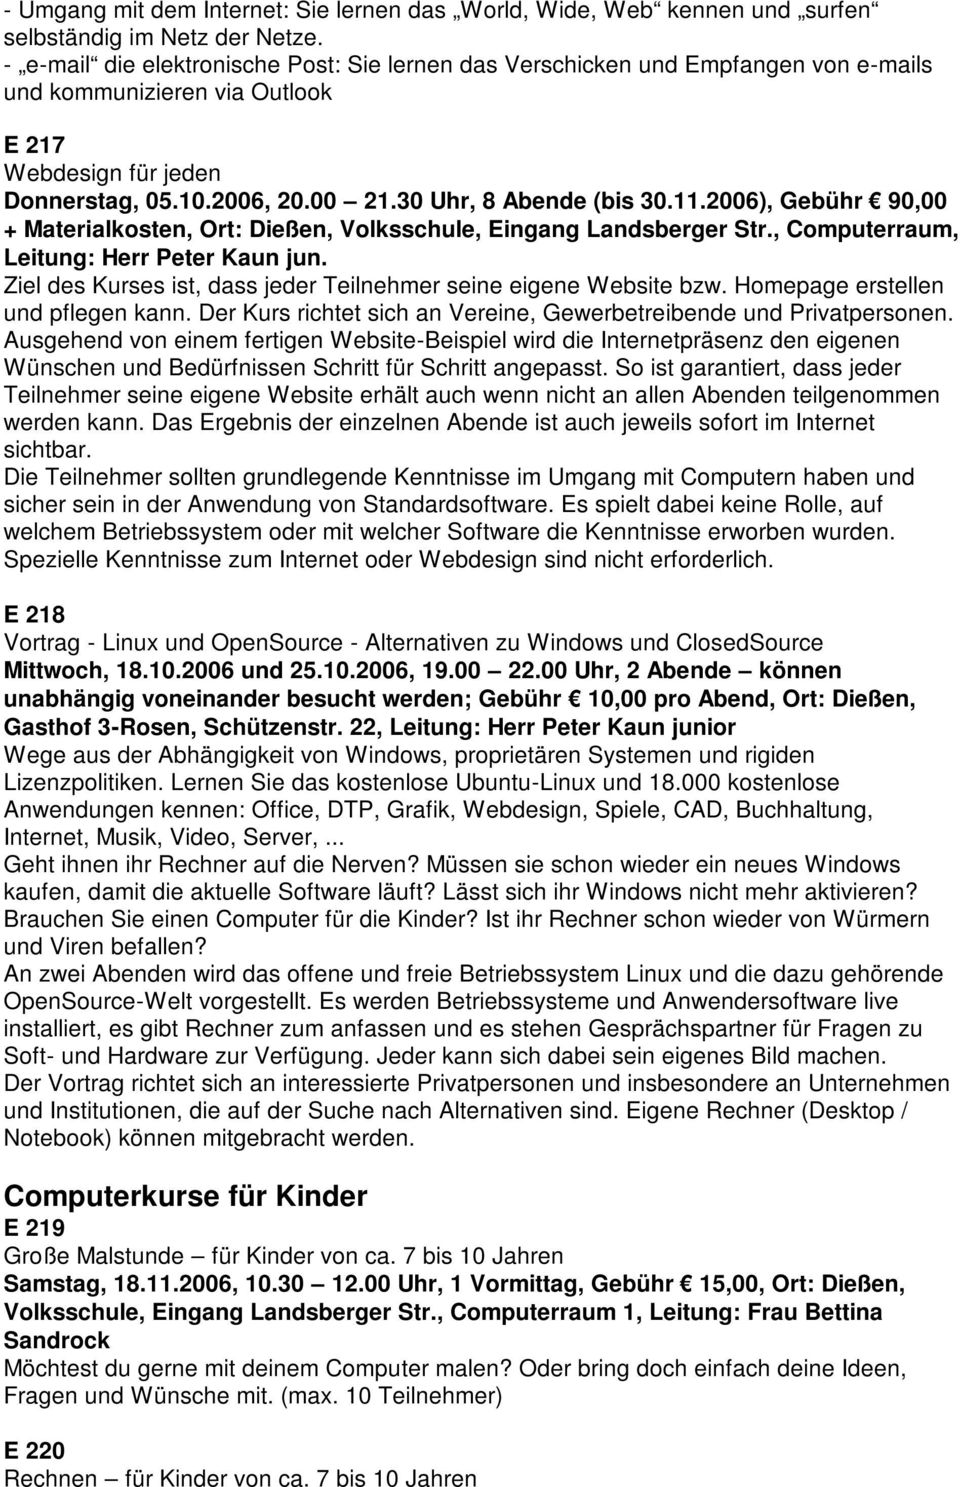 11.2006), Gebühr 90,00 + Materialkosten, Ort: Dießen, Volksschule, Eingang Landsberger Str., Computerraum, Leitung: Herr Peter Kaun jun.